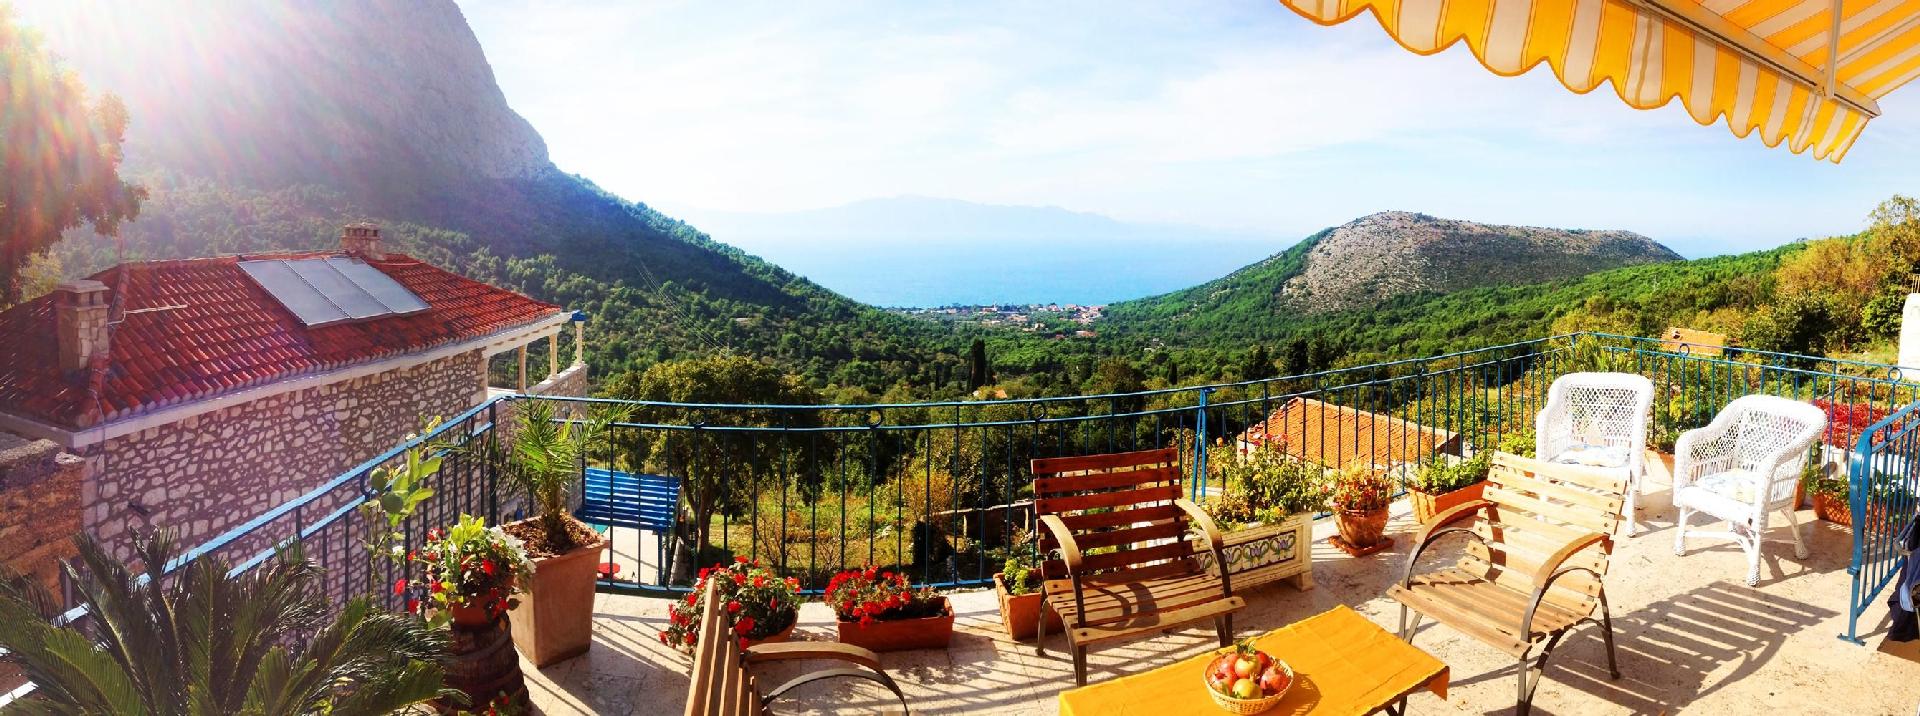 Ferienhaus in Srida Sela mit Grill und Terrasse un Ferienhaus in Dalmatien